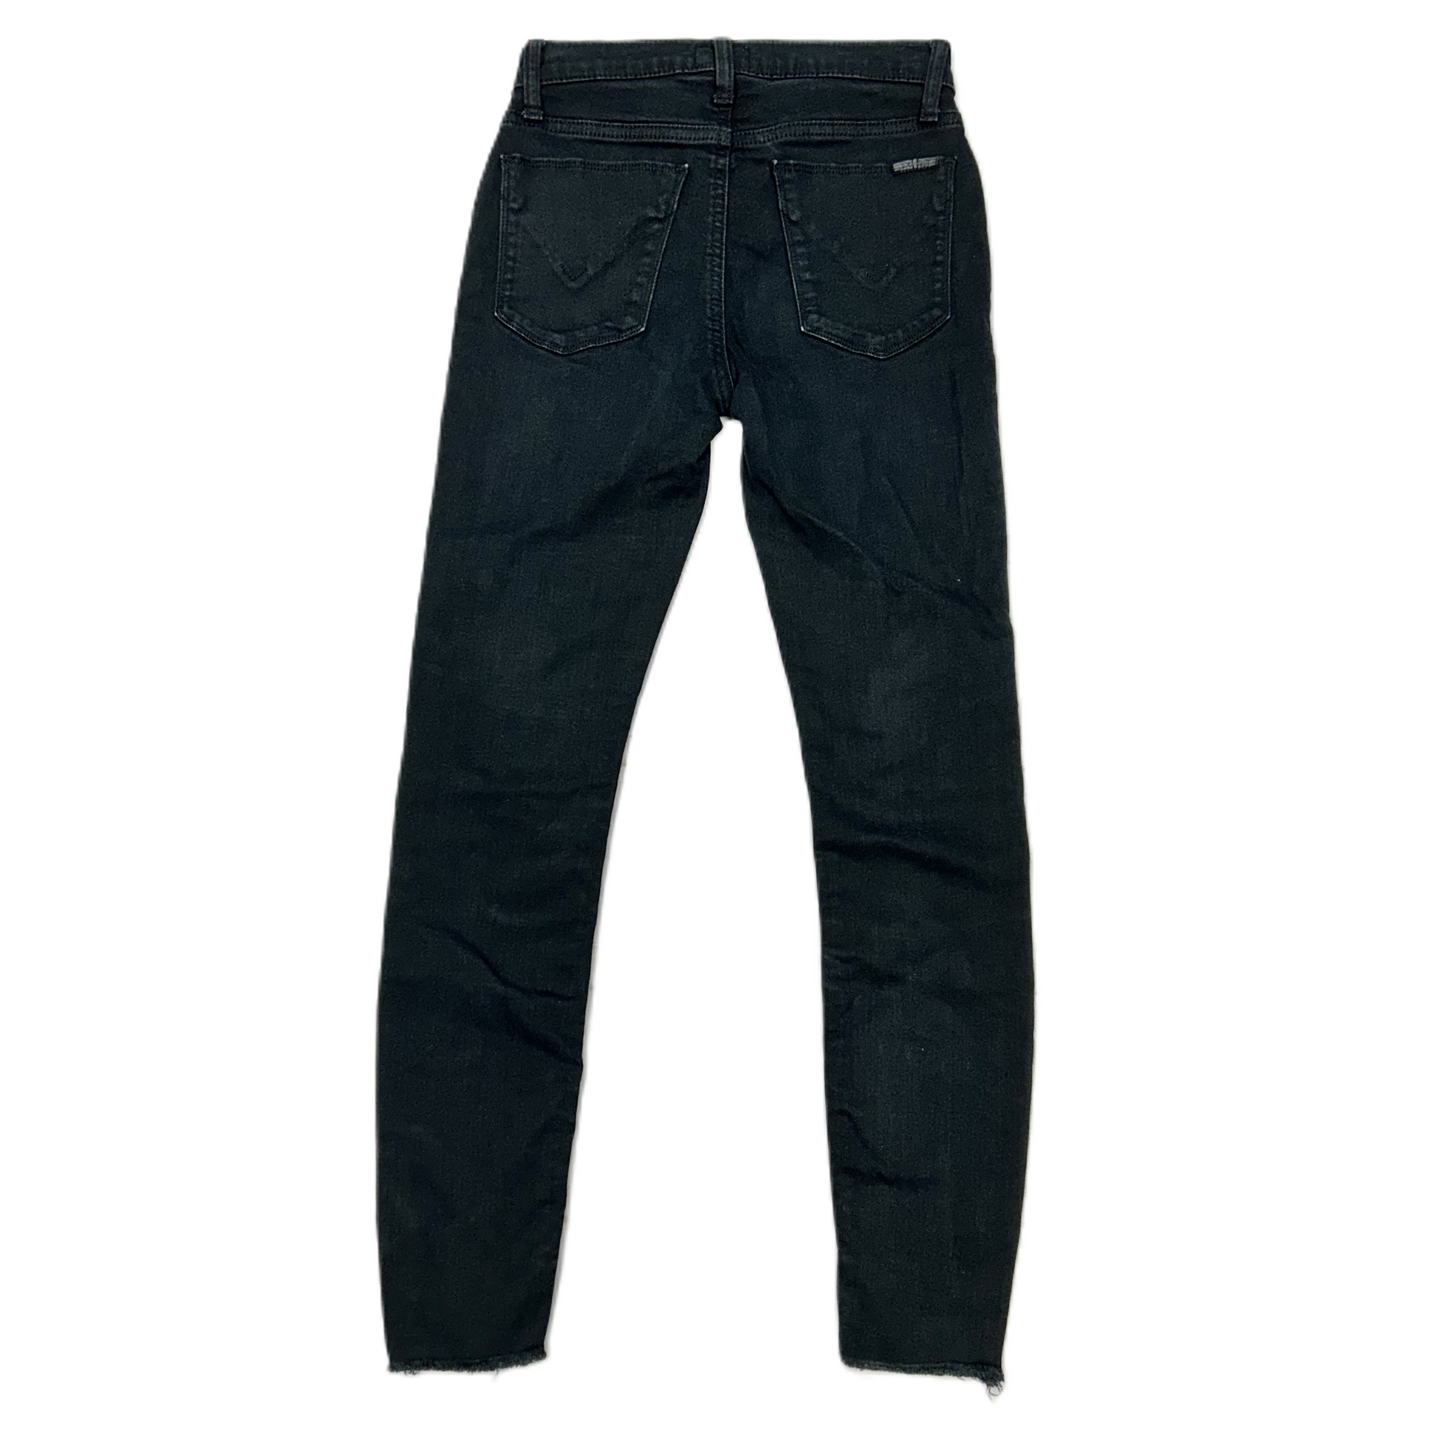 Black Denim Jeans Designer By Hudson, Size: 0